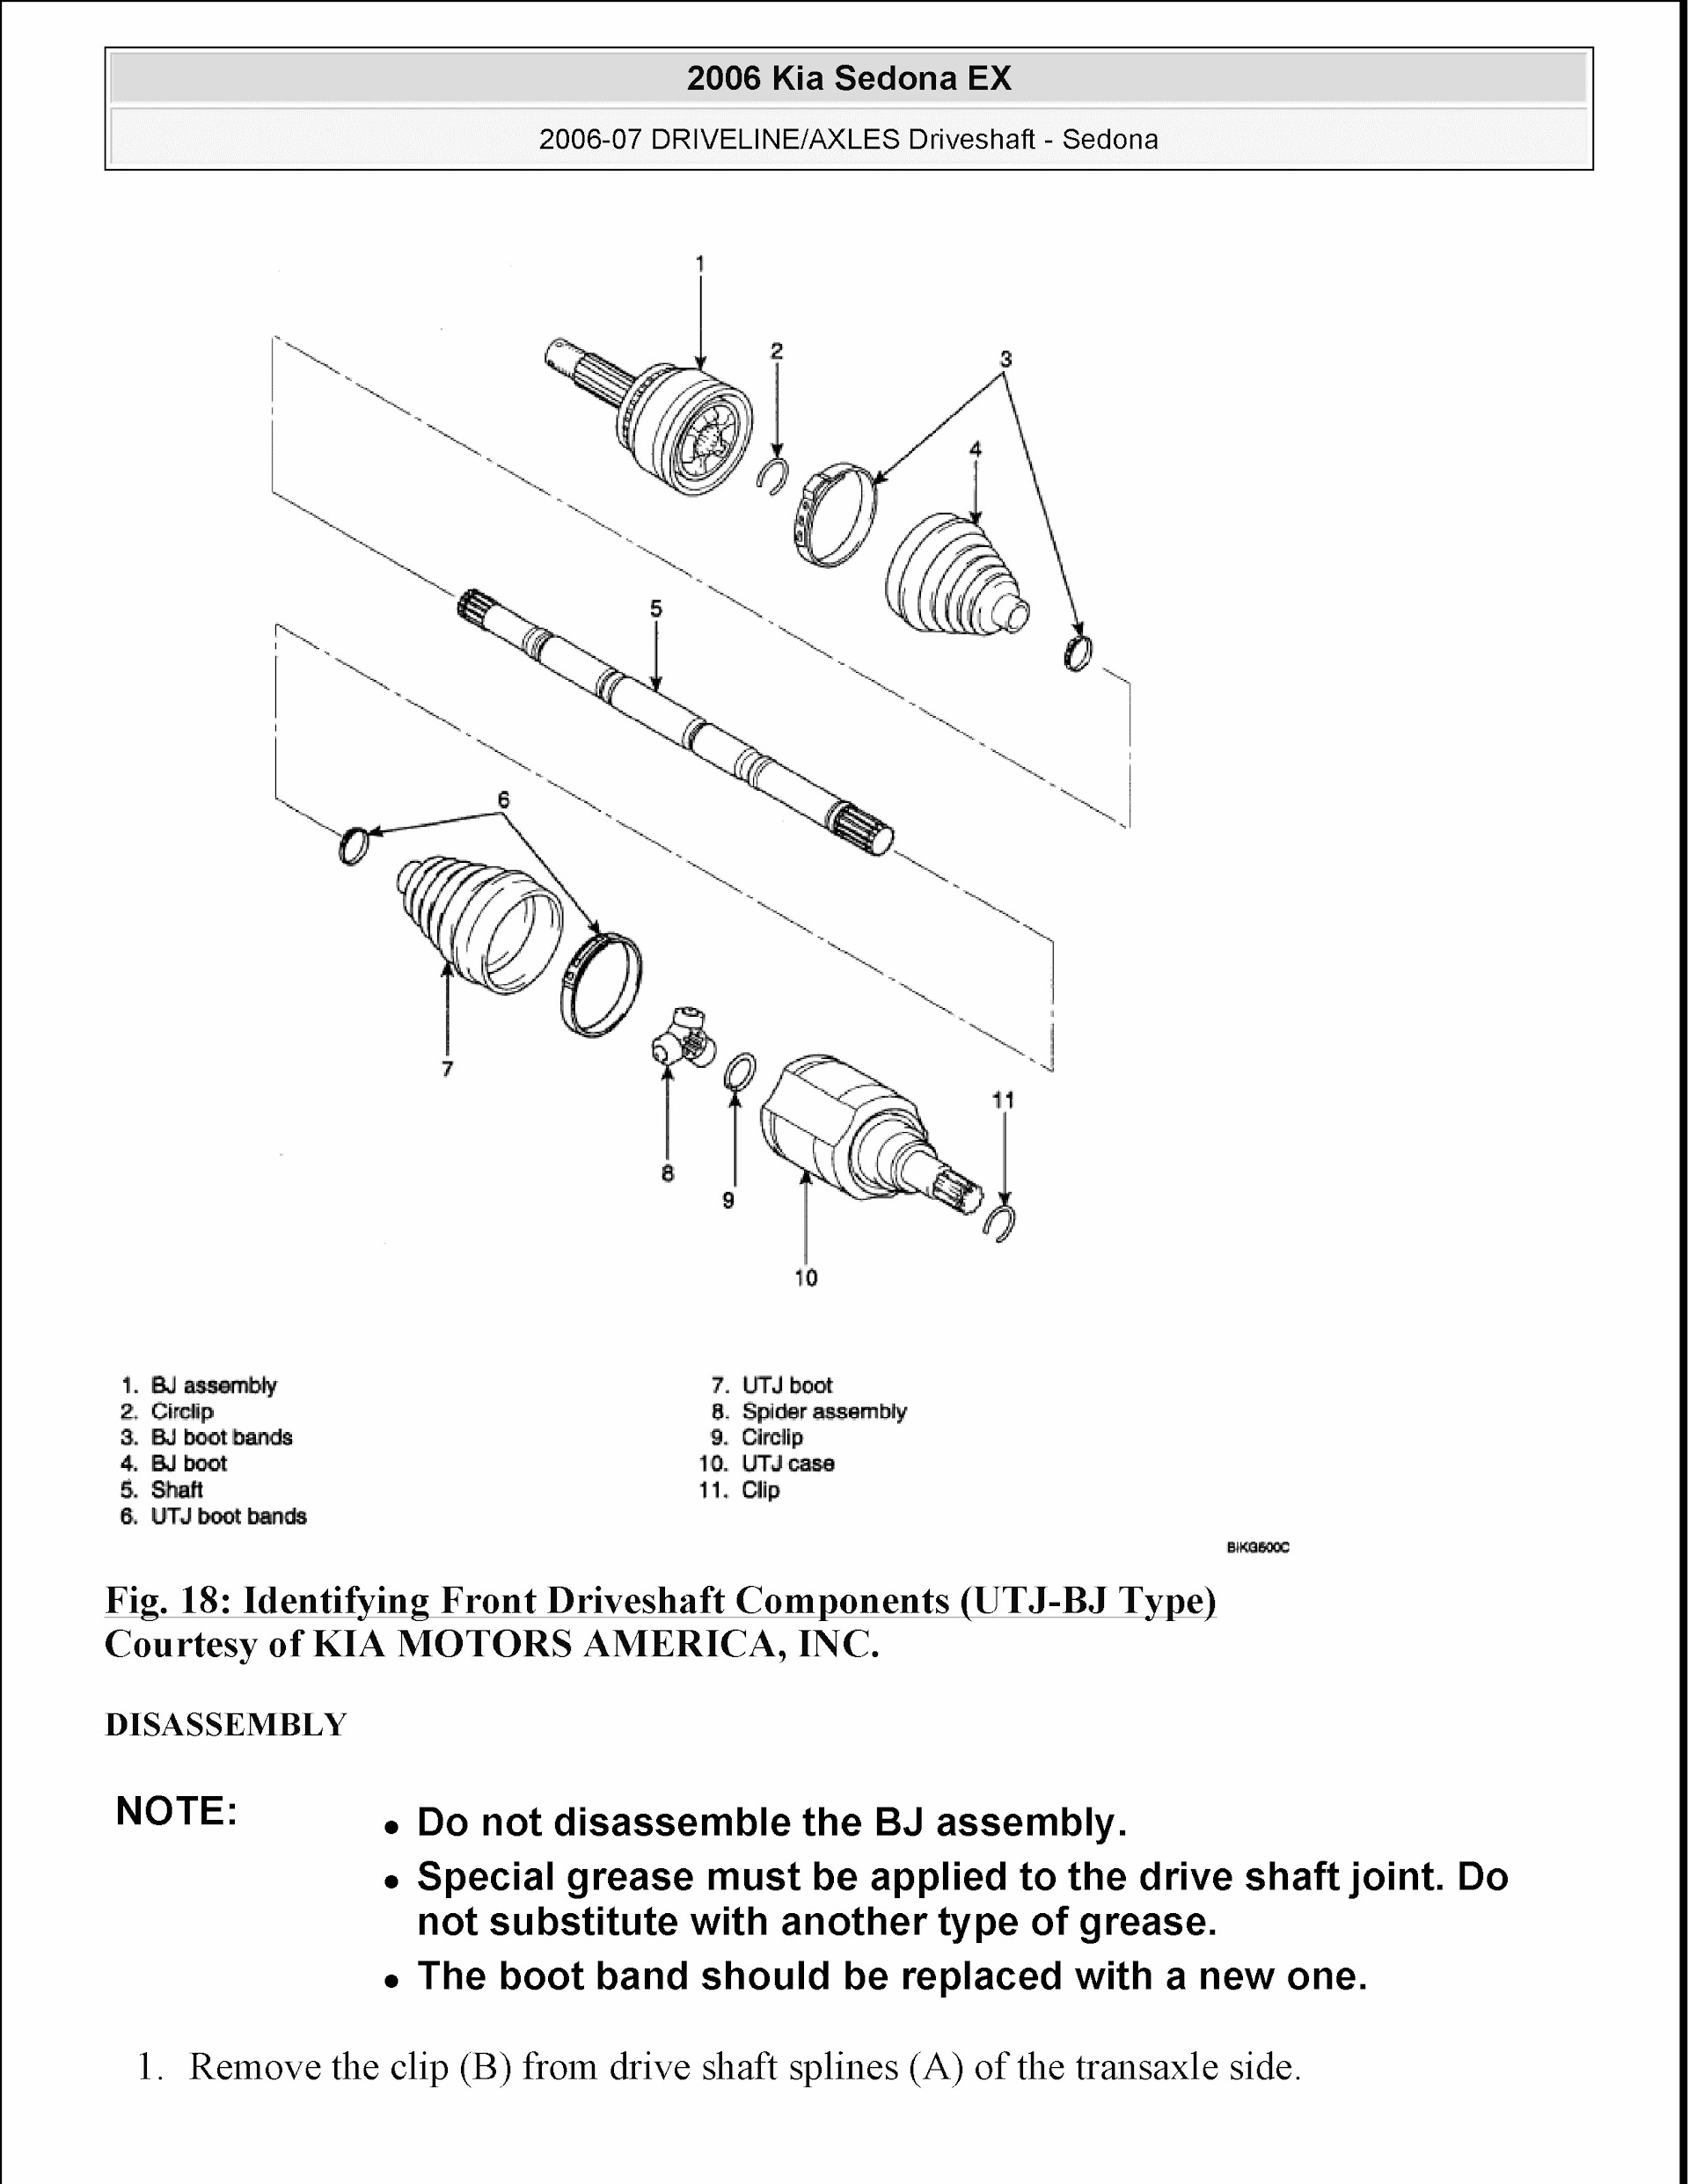 Download 2006 Kia Sedona Repair Manual